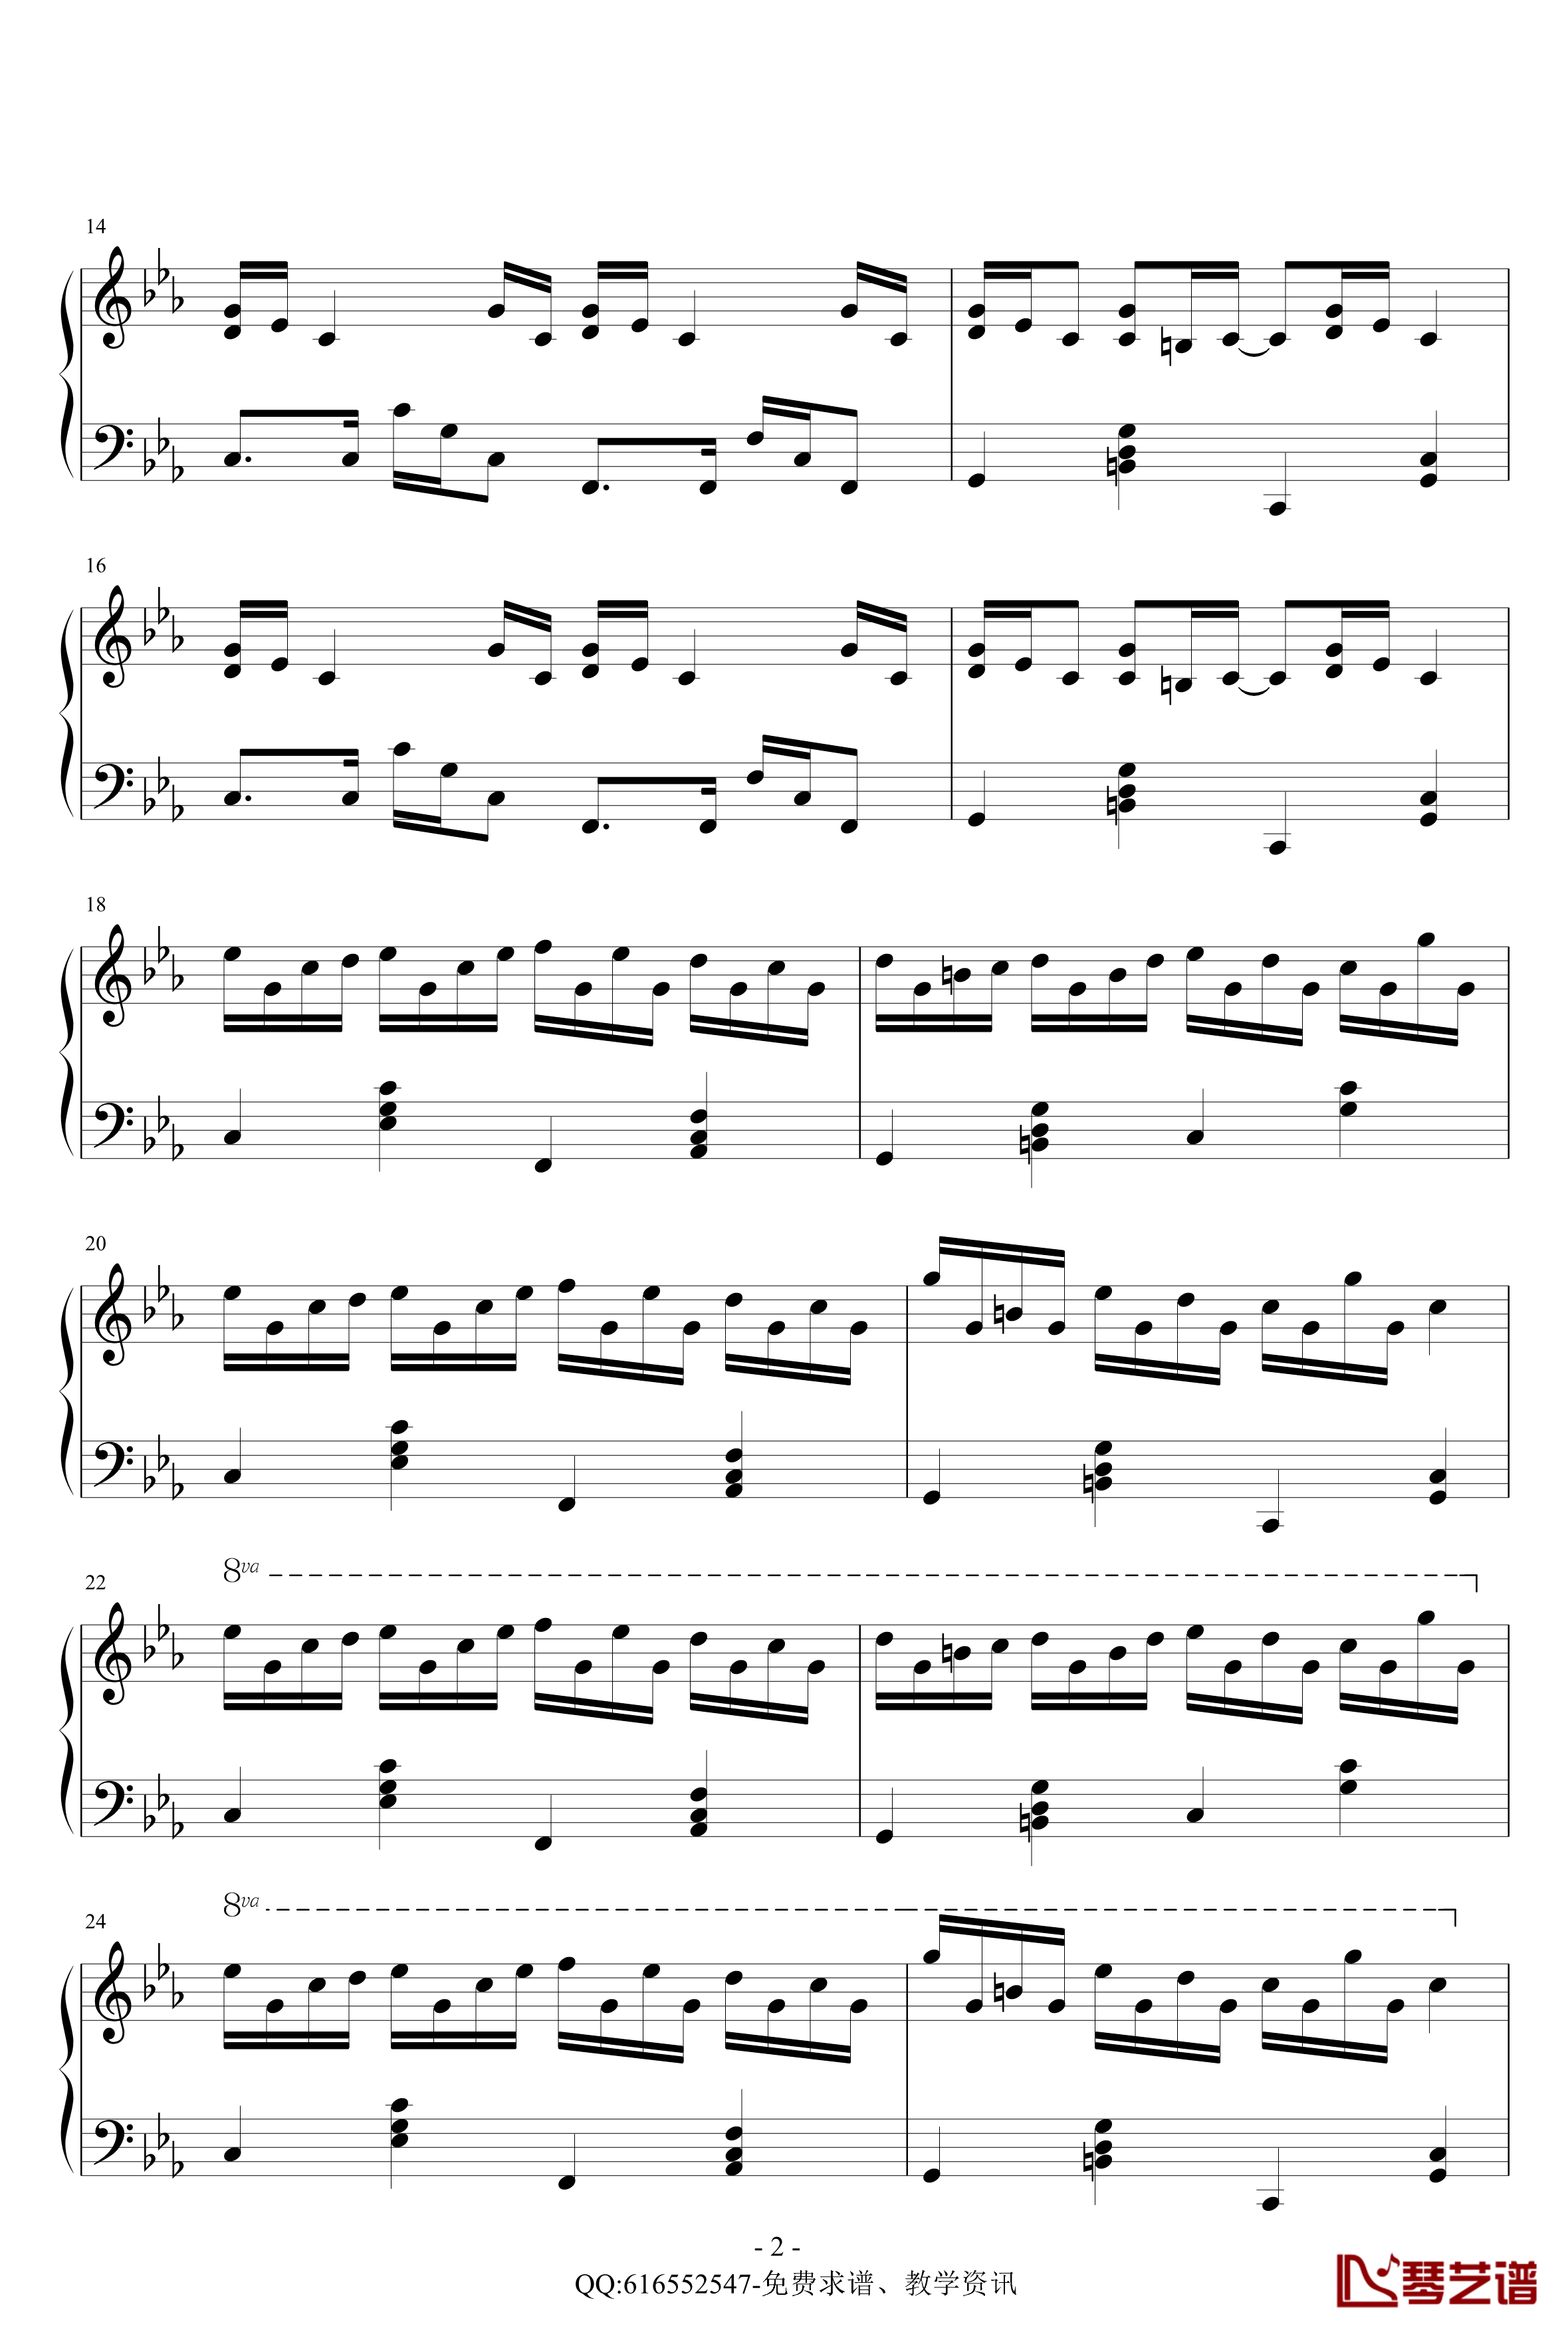 克罗地亚狂想曲钢琴谱-简化版-金龙鱼170427-马克西姆-Maksim·Mrvica2